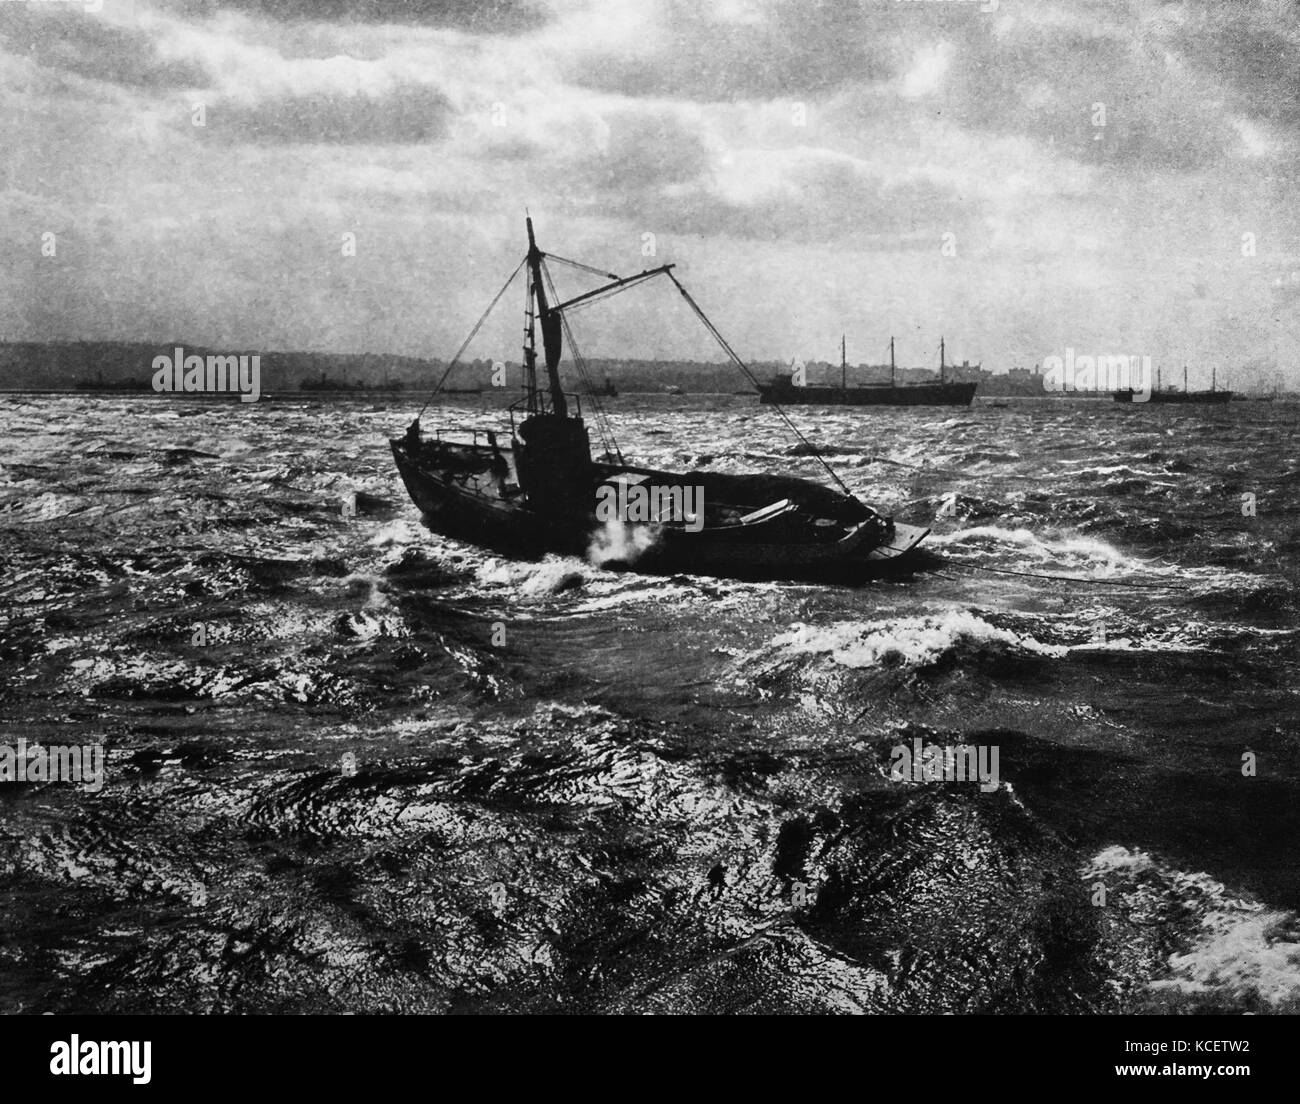 Barche nel porto di New York circa 1915 da Edwin Levick (1868-1929) fotografo che attività documentate nel porto di New York c.1900-30. La sua foto è apparso sul New York Times, New York Herald Tribune e il Chicago Tribune. Foto Stock